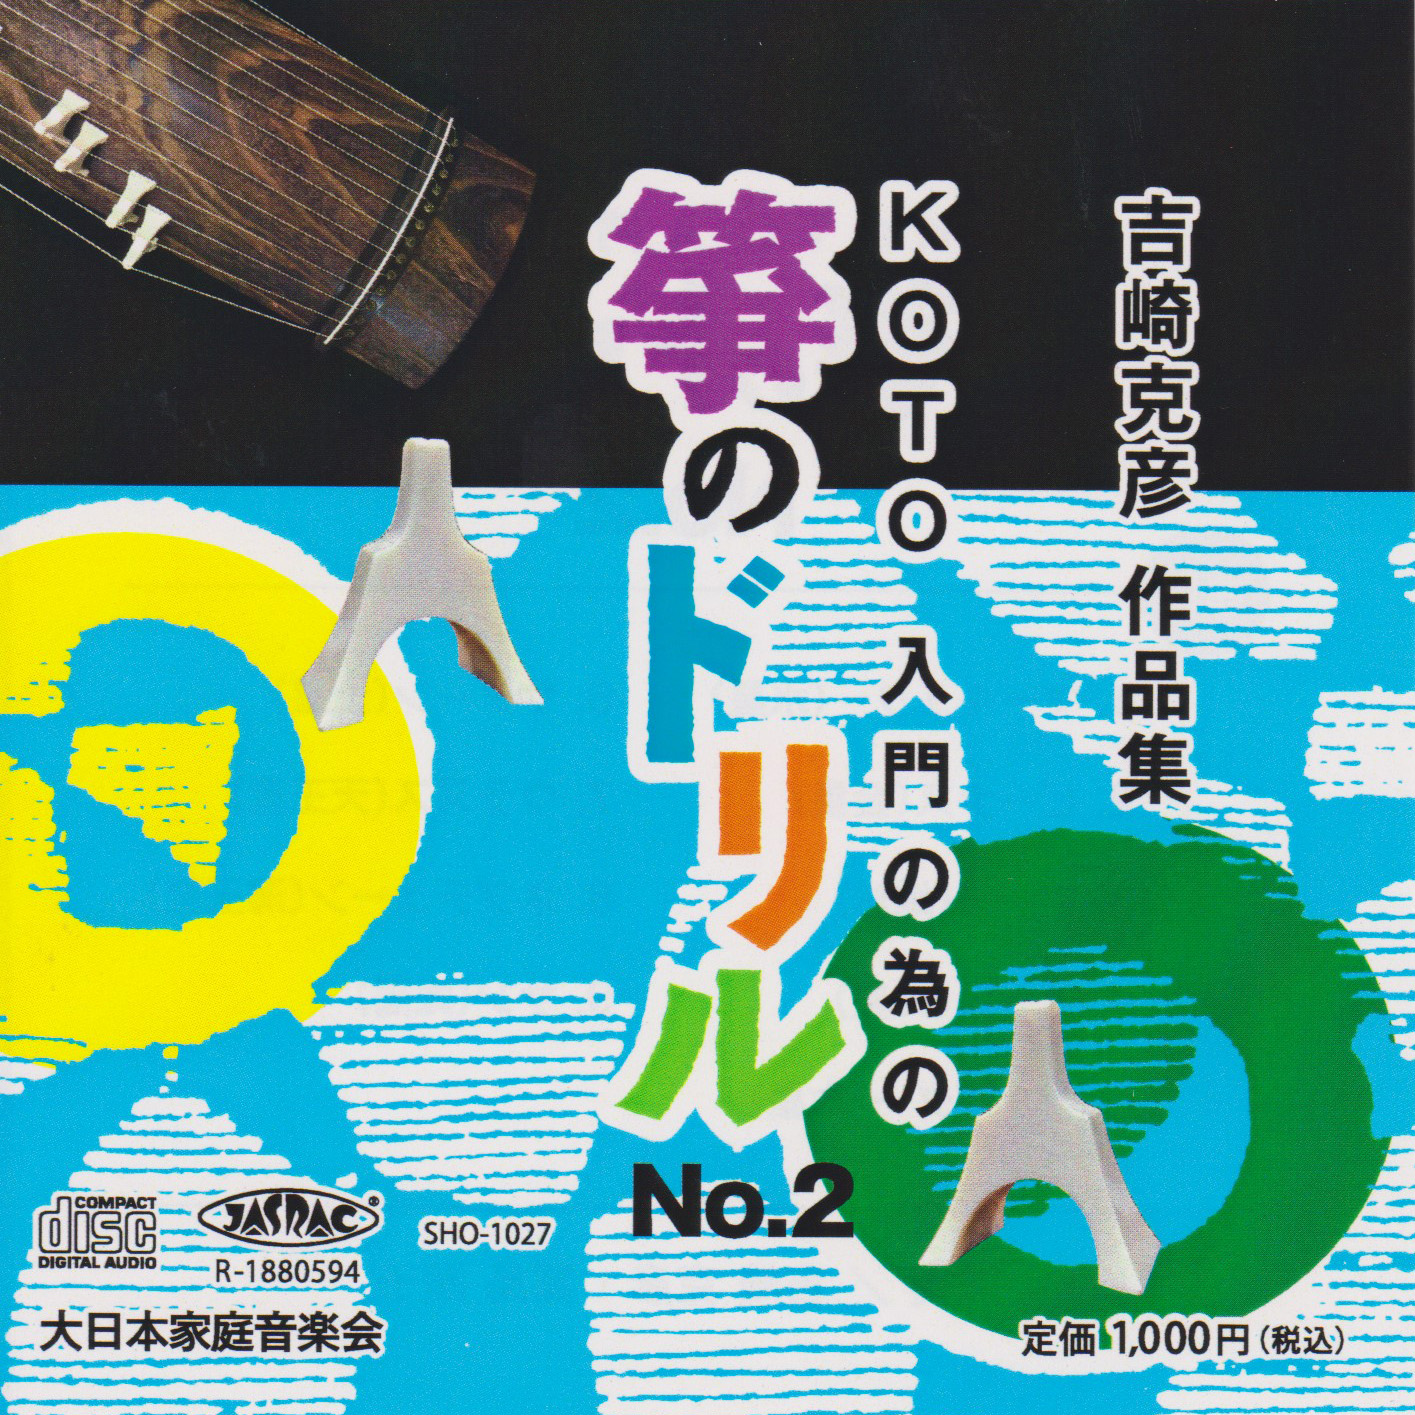 KOTO入門の為の「筝のドリルNo2」別売りCD